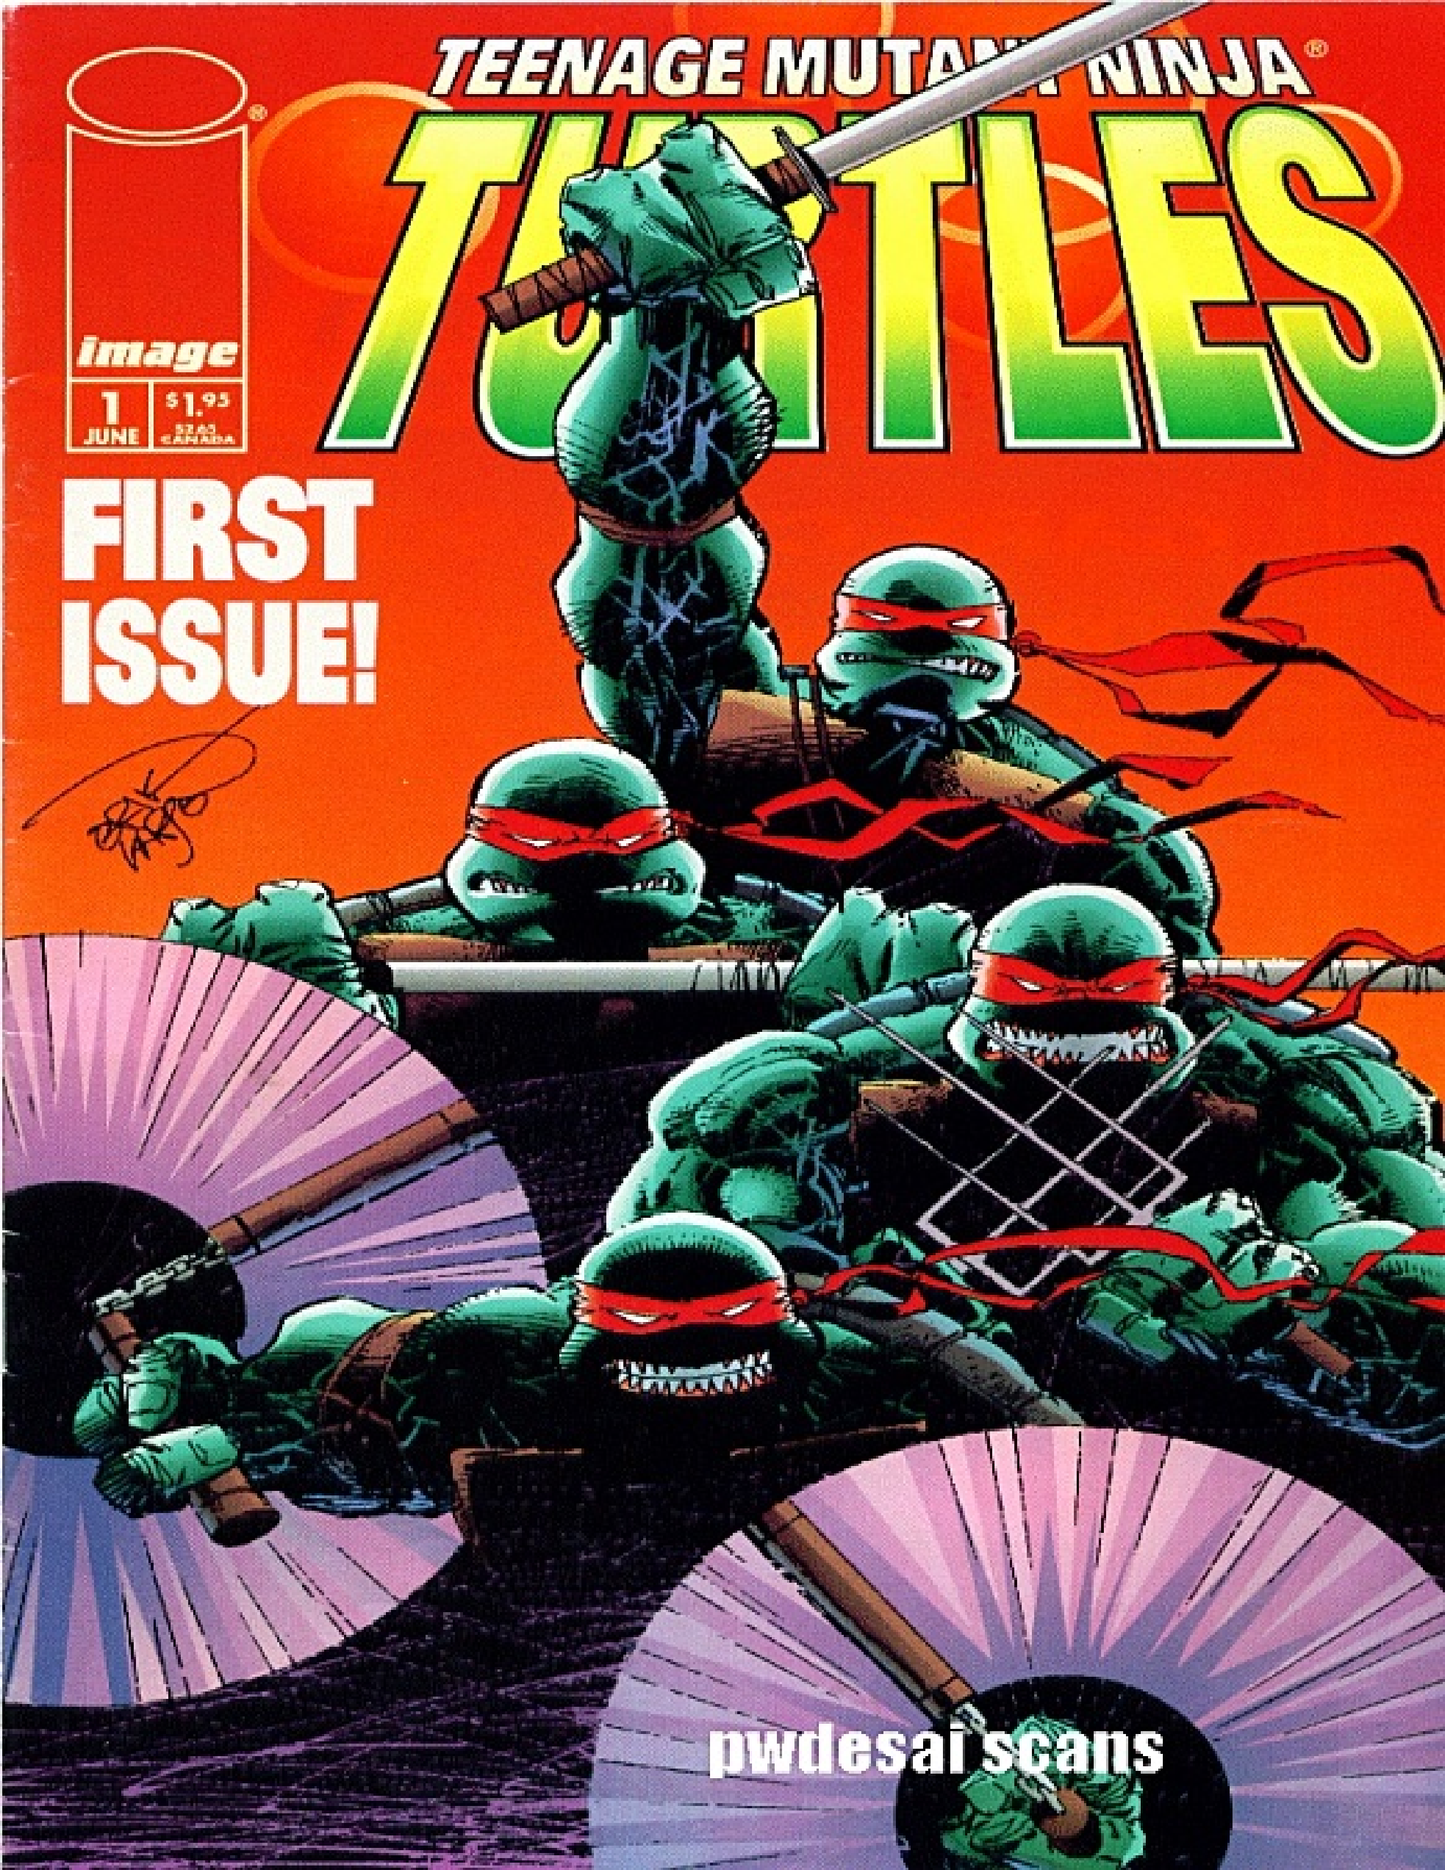 Teenage Mutant Ninja Turtles (1996-1999) | E-Comic Series